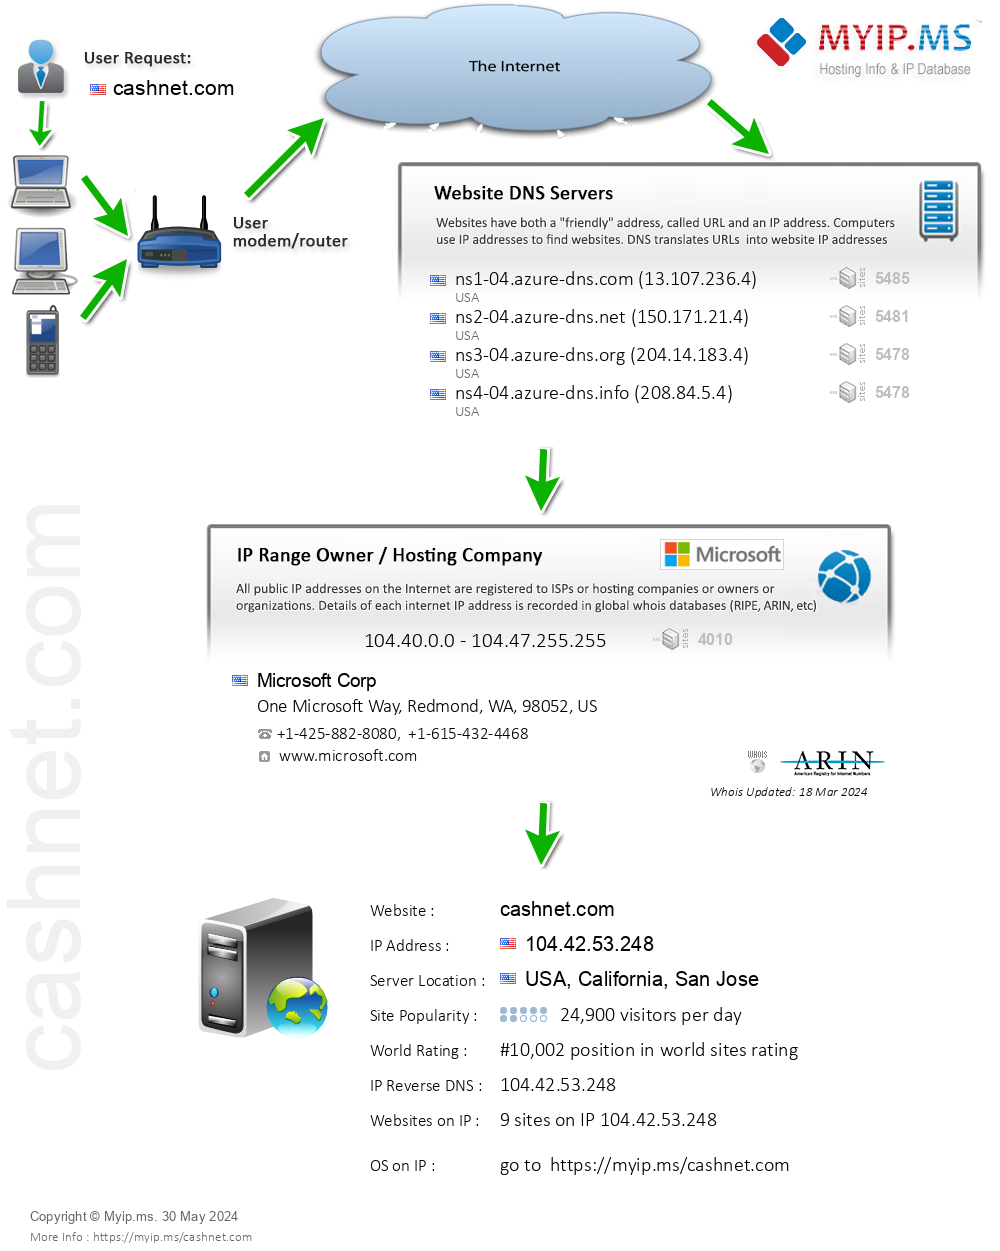 Cashnet.com - Website Hosting Visual IP Diagram